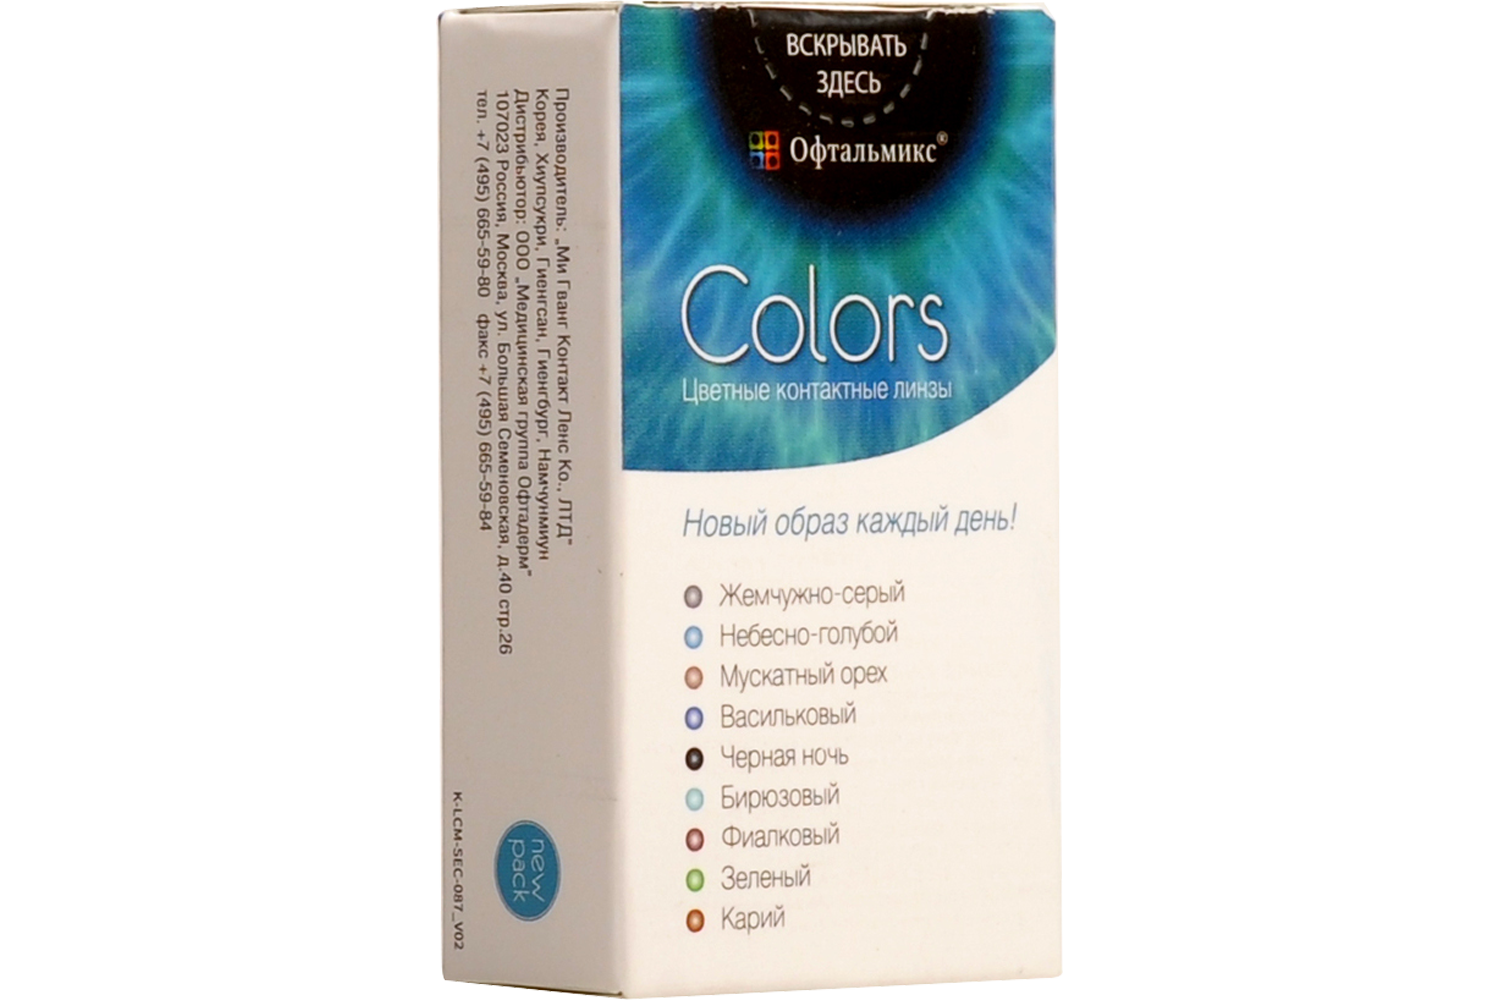 Купить Цветные контактные линзы Офтальмикс Colors, 2 шт. PWR -0, 00, R 8.6, Black